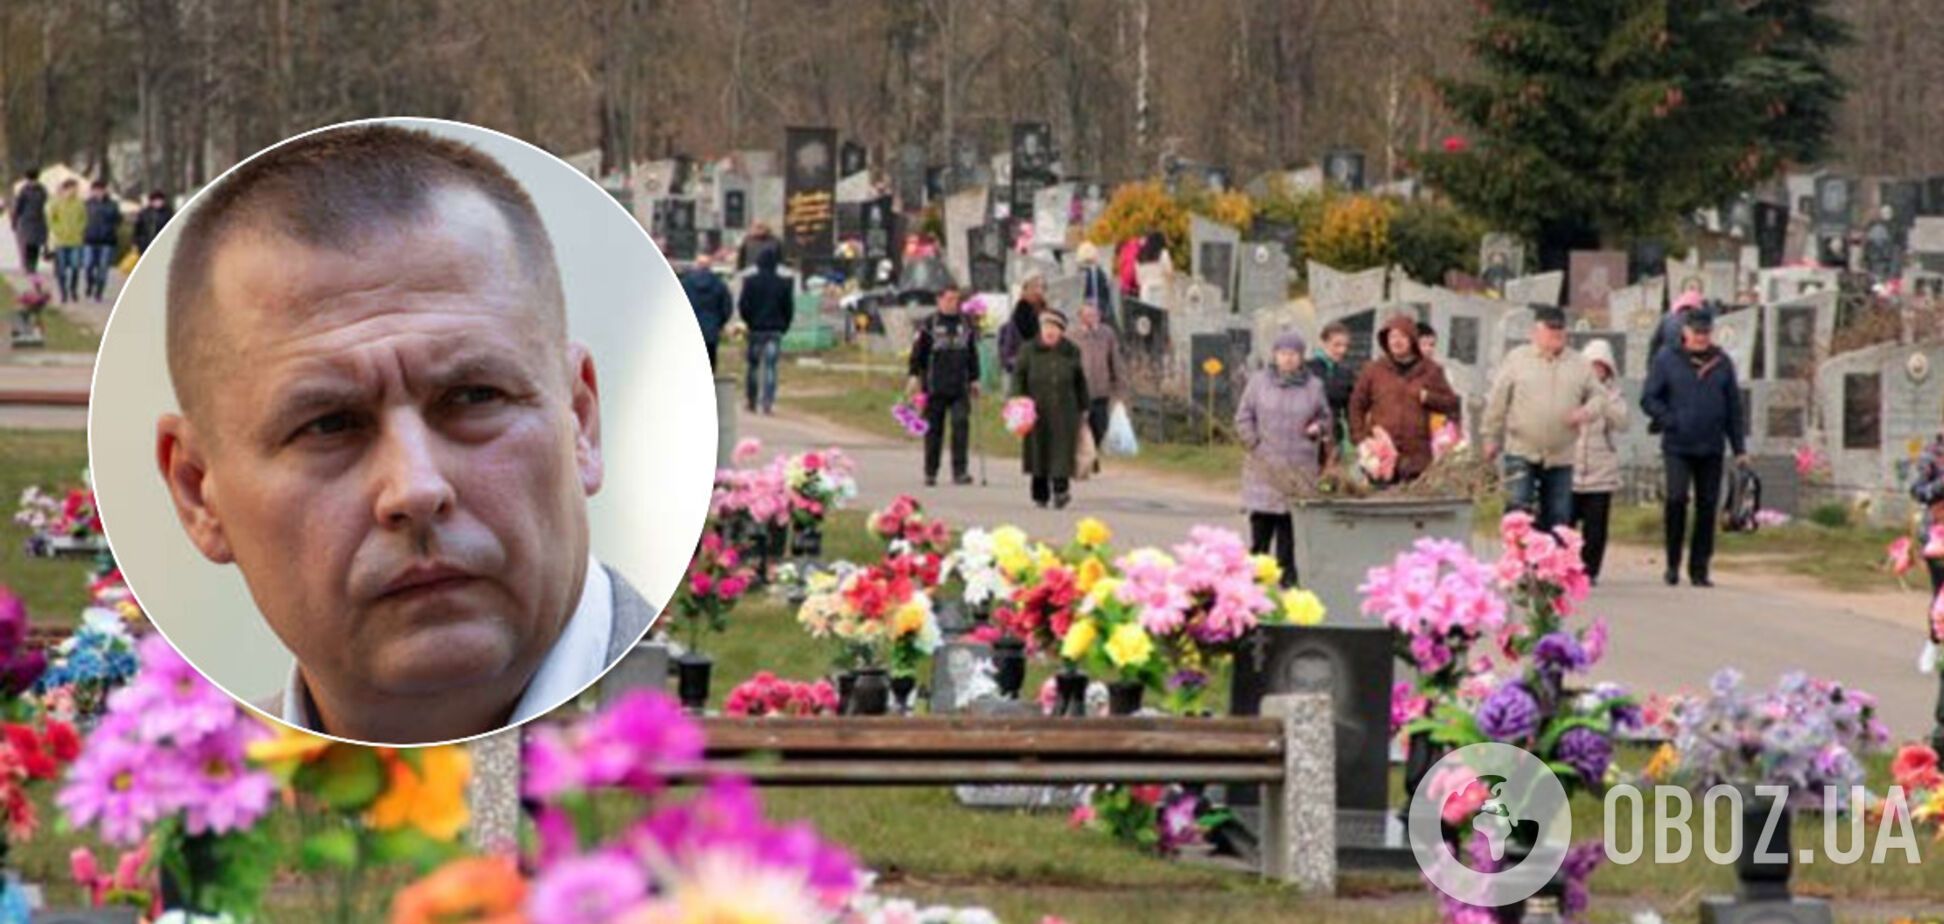 Филатов призвал украинцев не 'жрать на могилах' после Пасхи